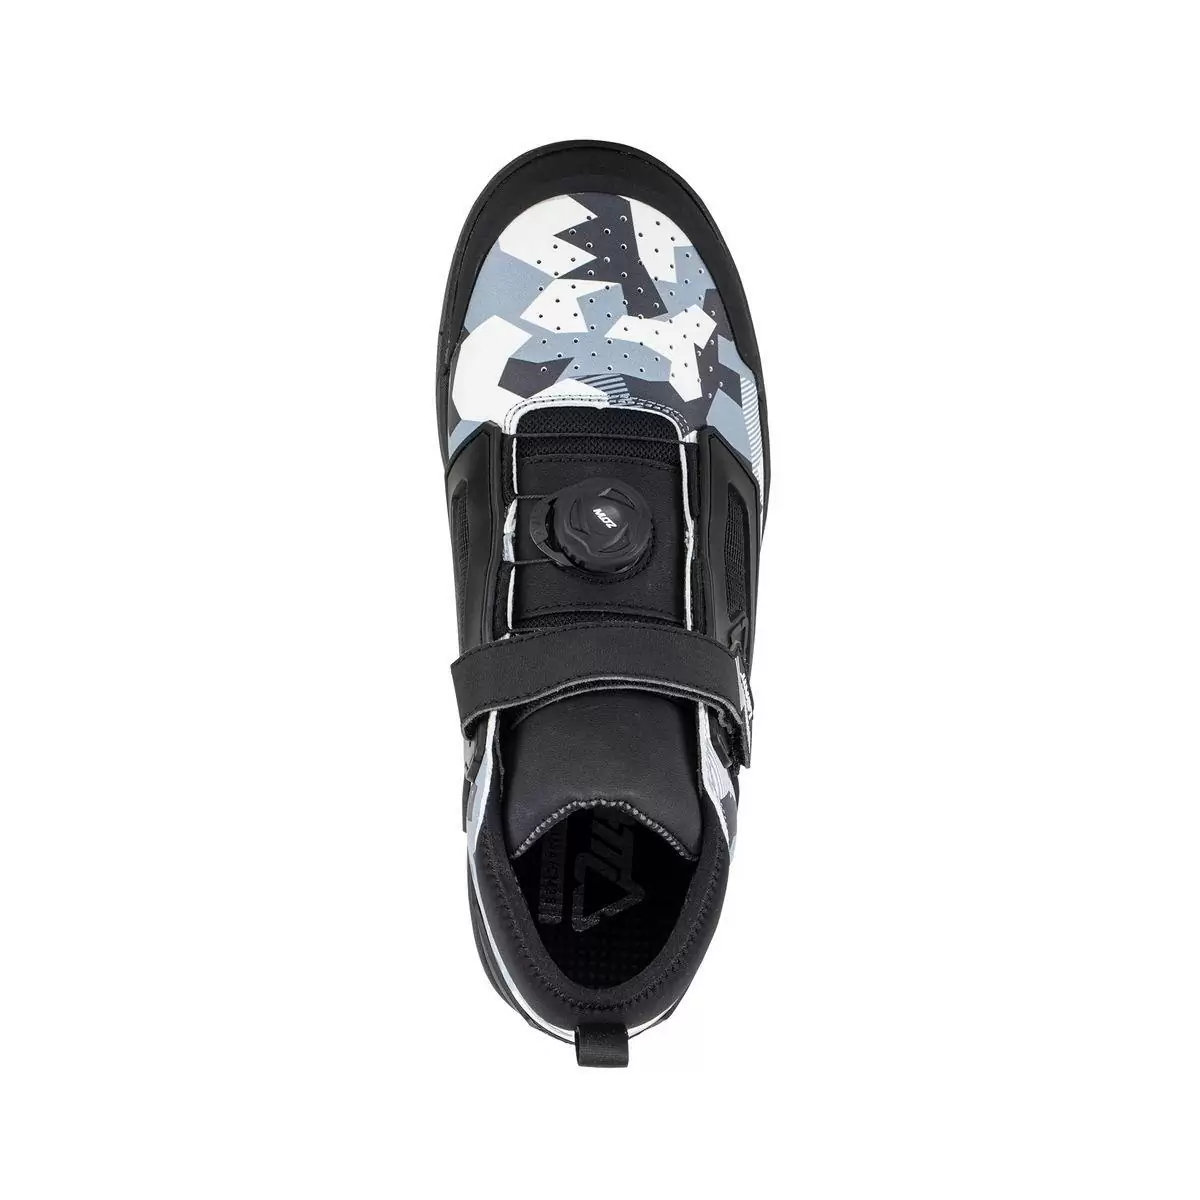 Chaussures VTT 3.0 Flat Pro Blanc/Noir Taille 43.5 #2